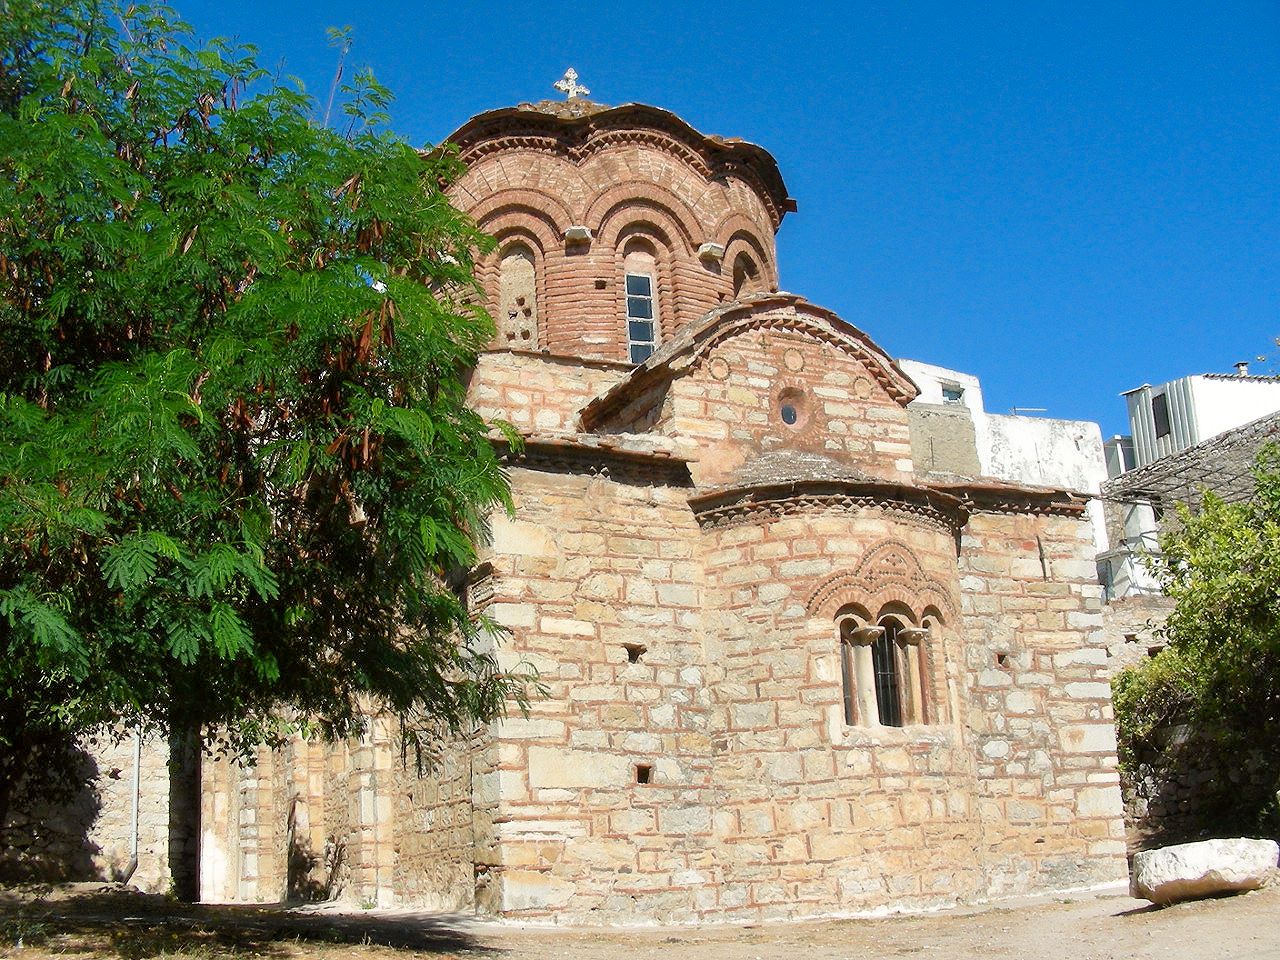 Kirche Agioi Apostoloi in Pyrgi als Kopie von Nea Moni